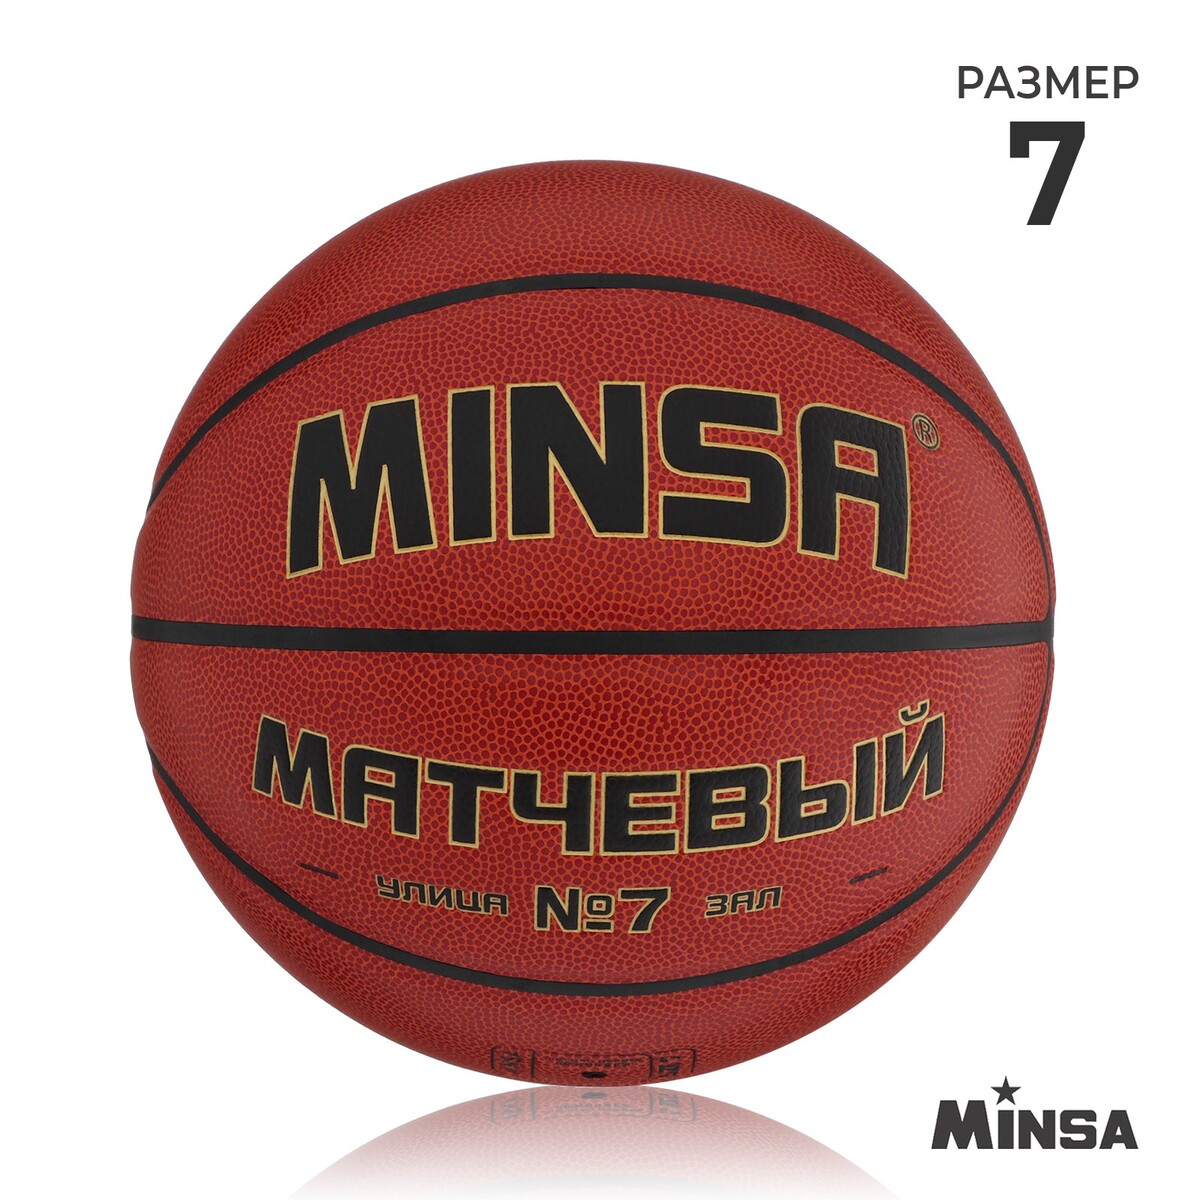 Баскетбольный мяч minsa, матчевый, microfiber pu, клееный, 8 панелей, р. 7 баскетбольный мяч разм 7 spalding excel tf500 77 204z